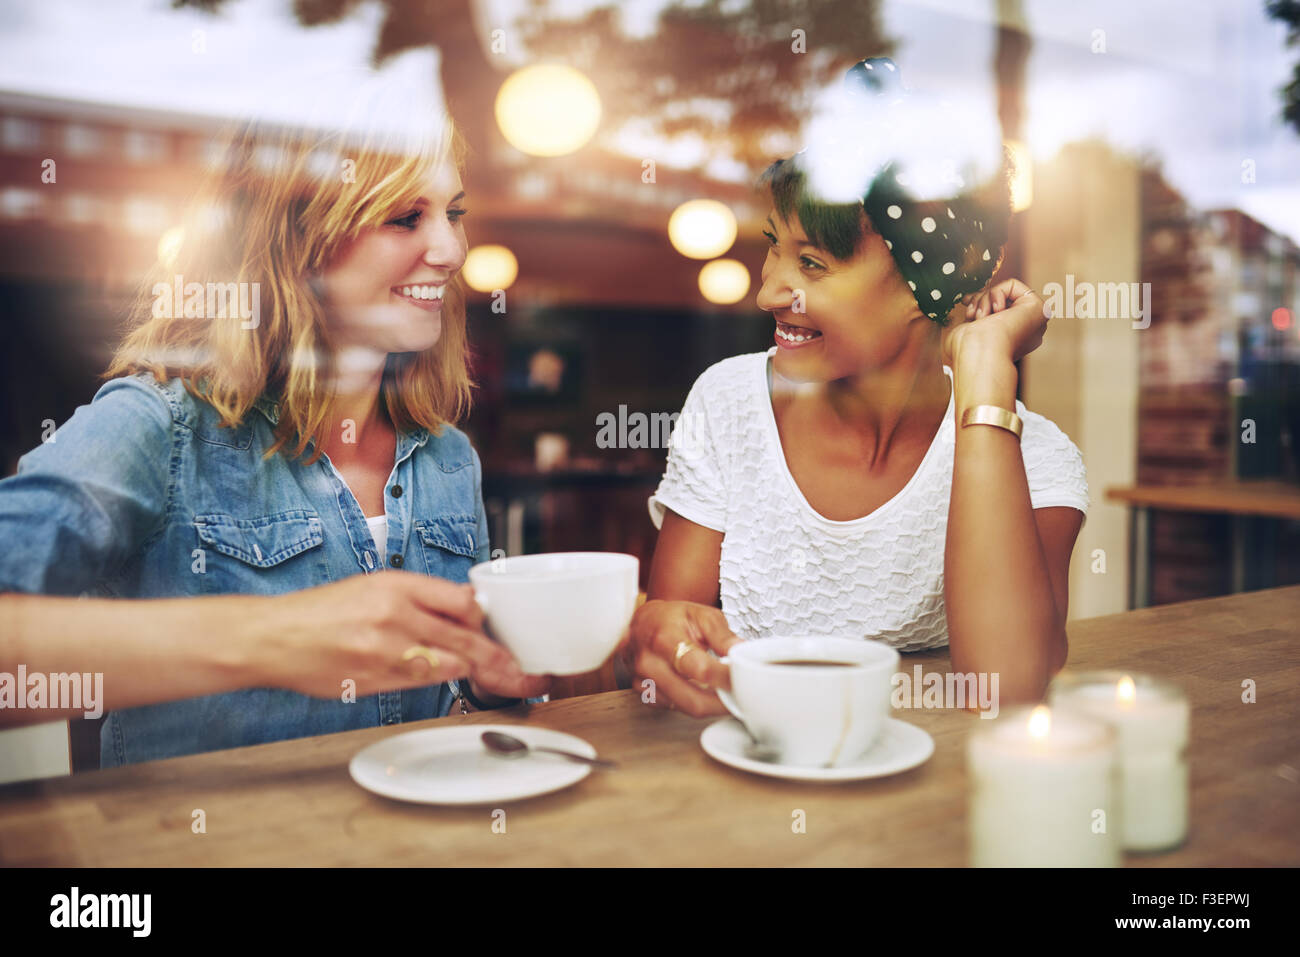 Dos amigos disfrutando multiétnico café juntos en una cafetería vistos a través del cristal con reflejos mientras se sientan en una mesa Foto de stock